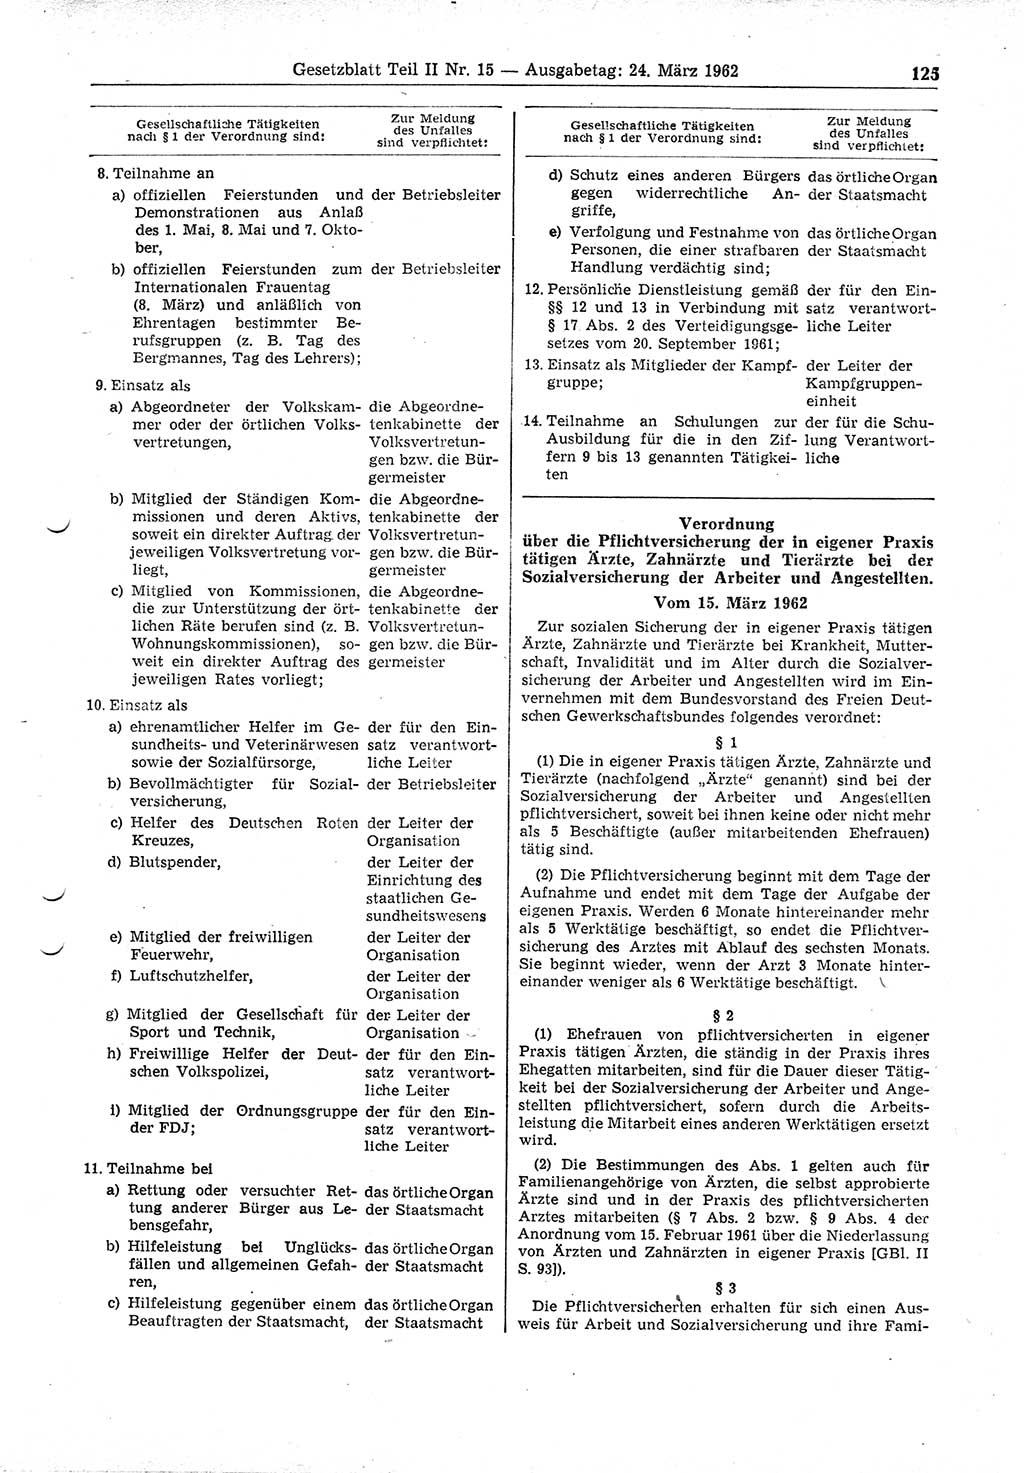 Gesetzblatt (GBl.) der Deutschen Demokratischen Republik (DDR) Teil â… â… 1962, Seite 125 (GBl. DDR â… â… 1962, S. 125)